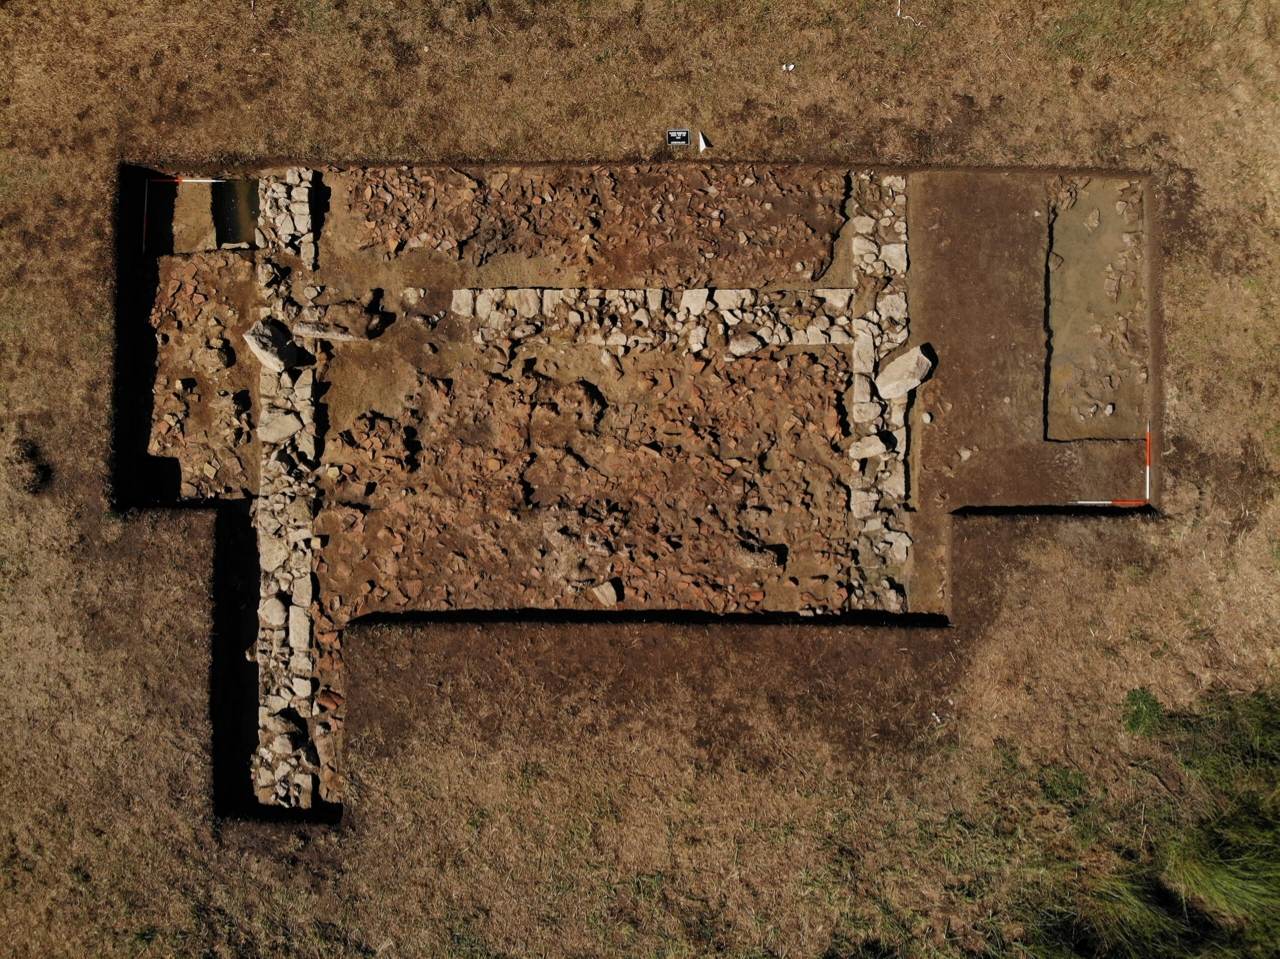 Entdeckung des Poseidon-Tempels am Standort Kleidi in der Nähe von Samikon in Griechenland 2